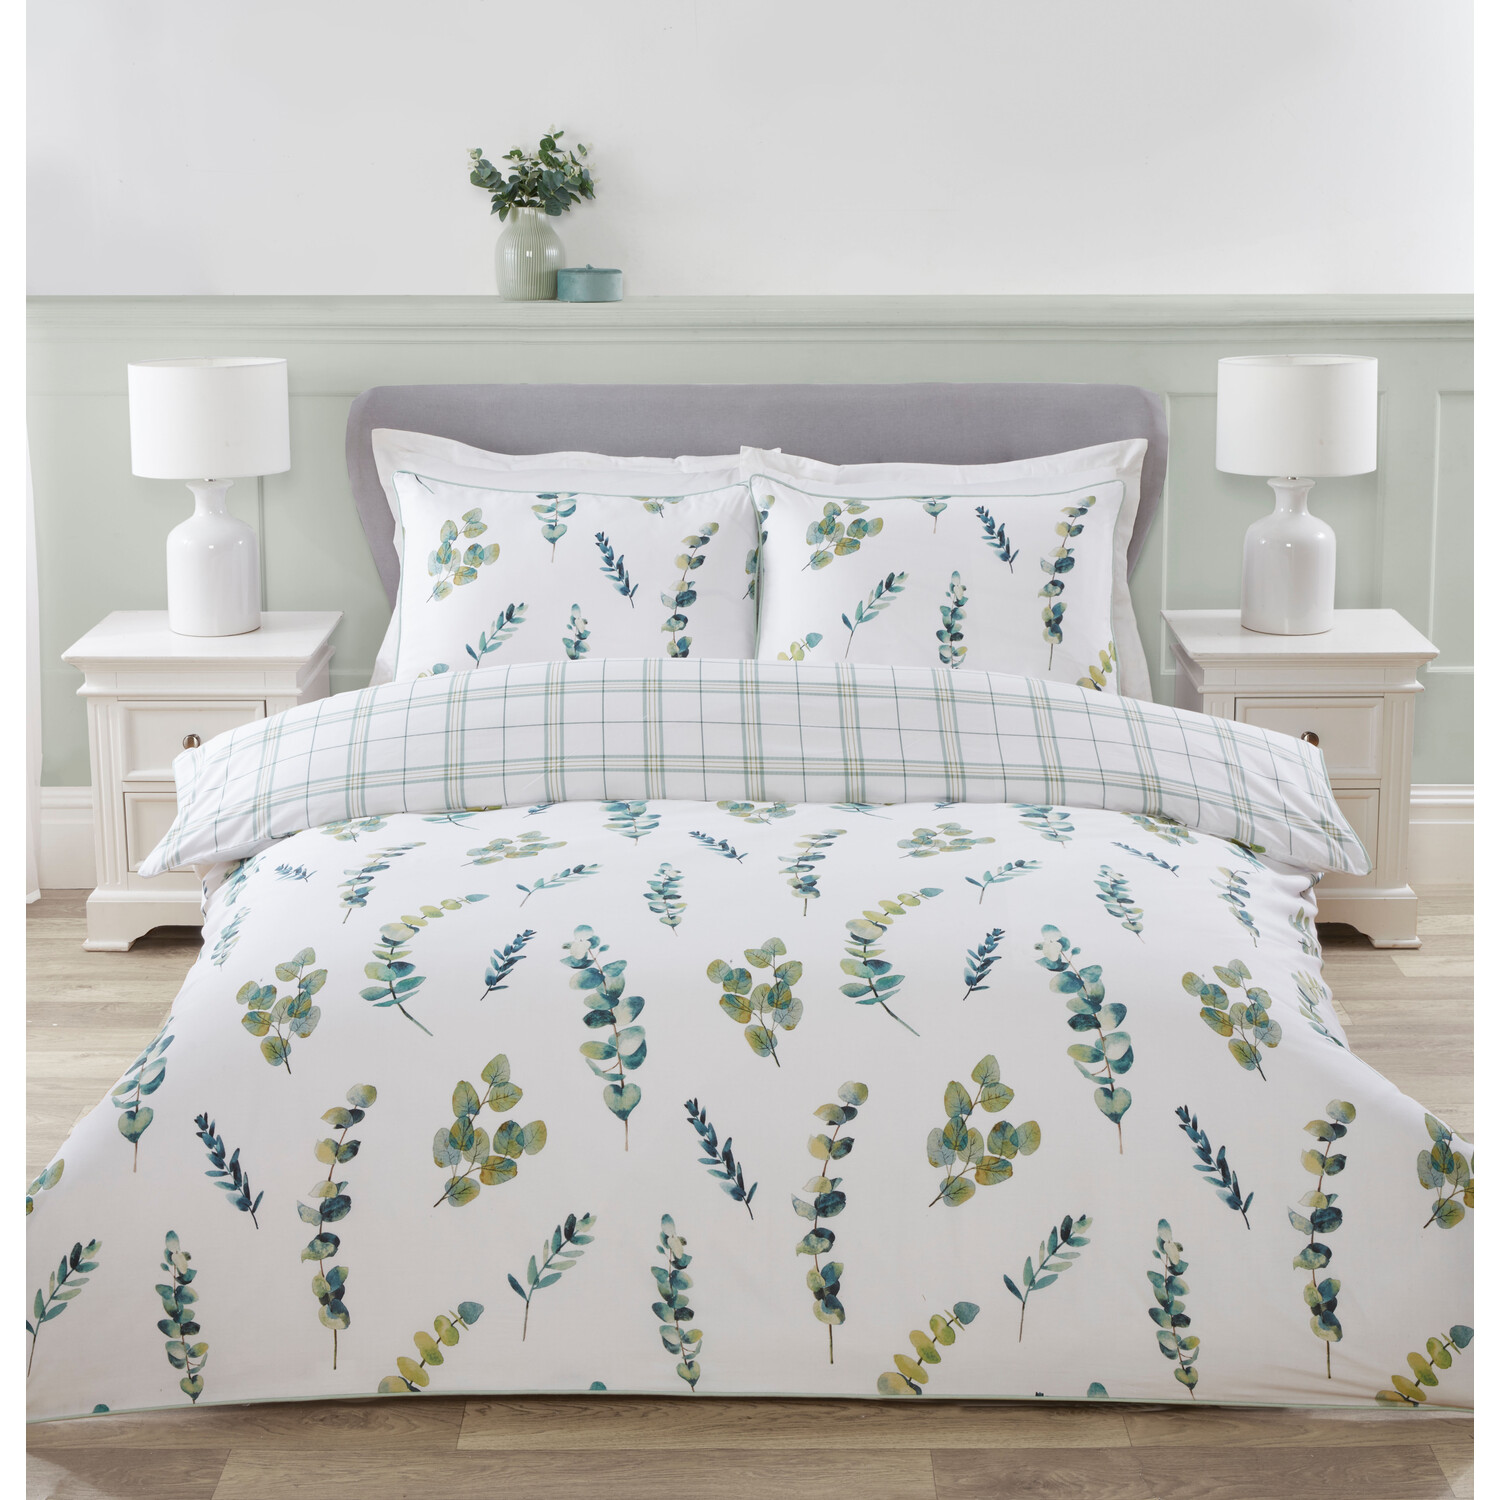 Divante Double Green Eucalyptus Spray Duvet Cover and Pillowcase Set Image 1